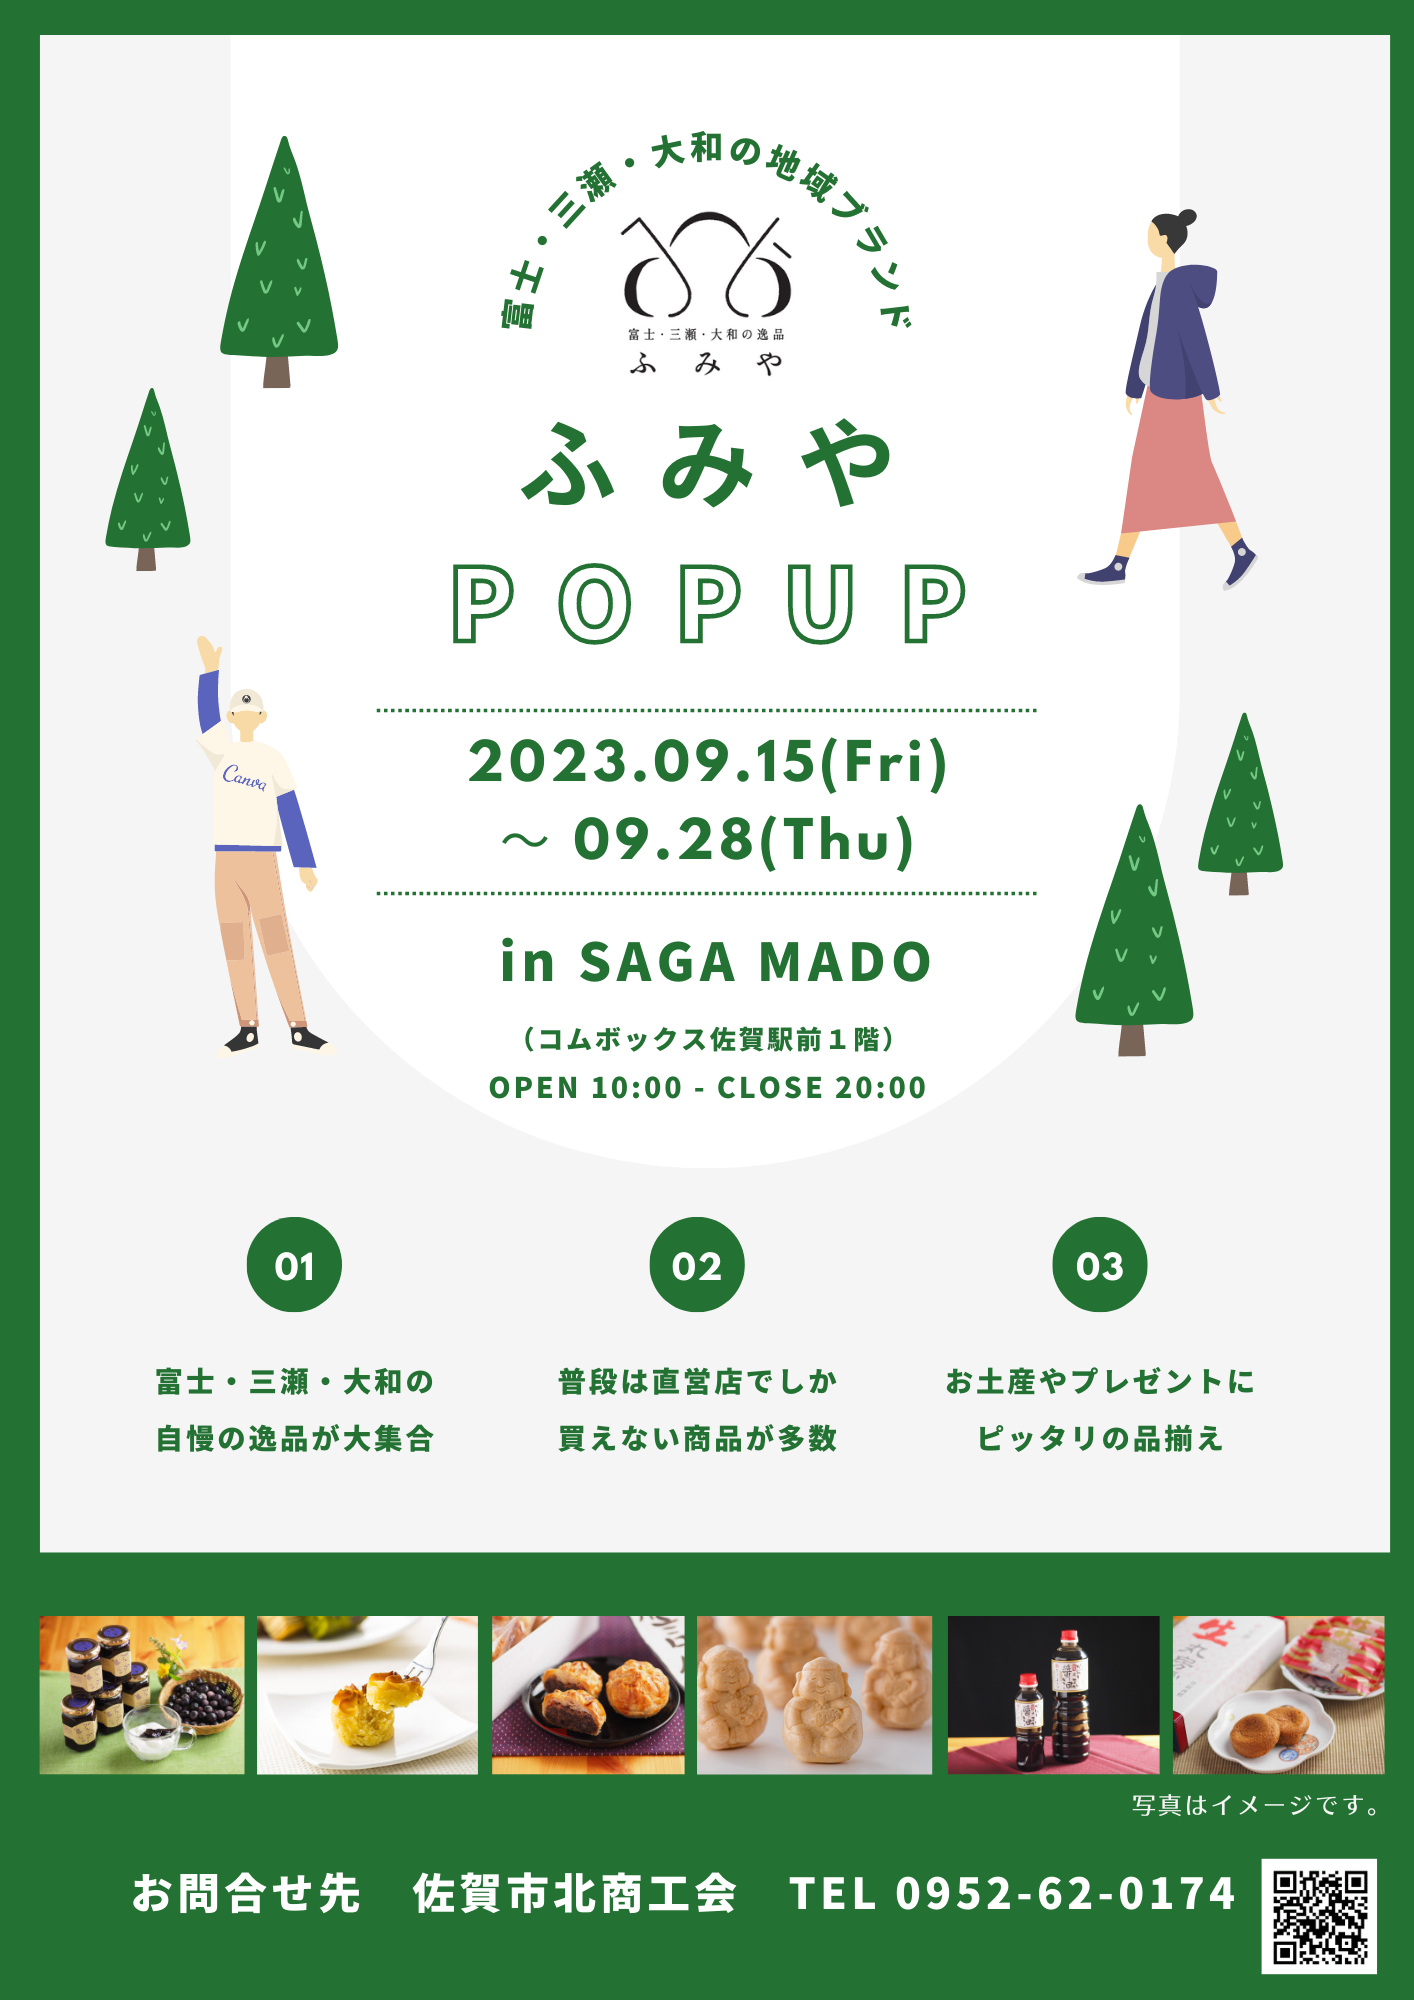 「地域ブランド『ふみや』POPUP in SAGA MADO」開催のお知らせ